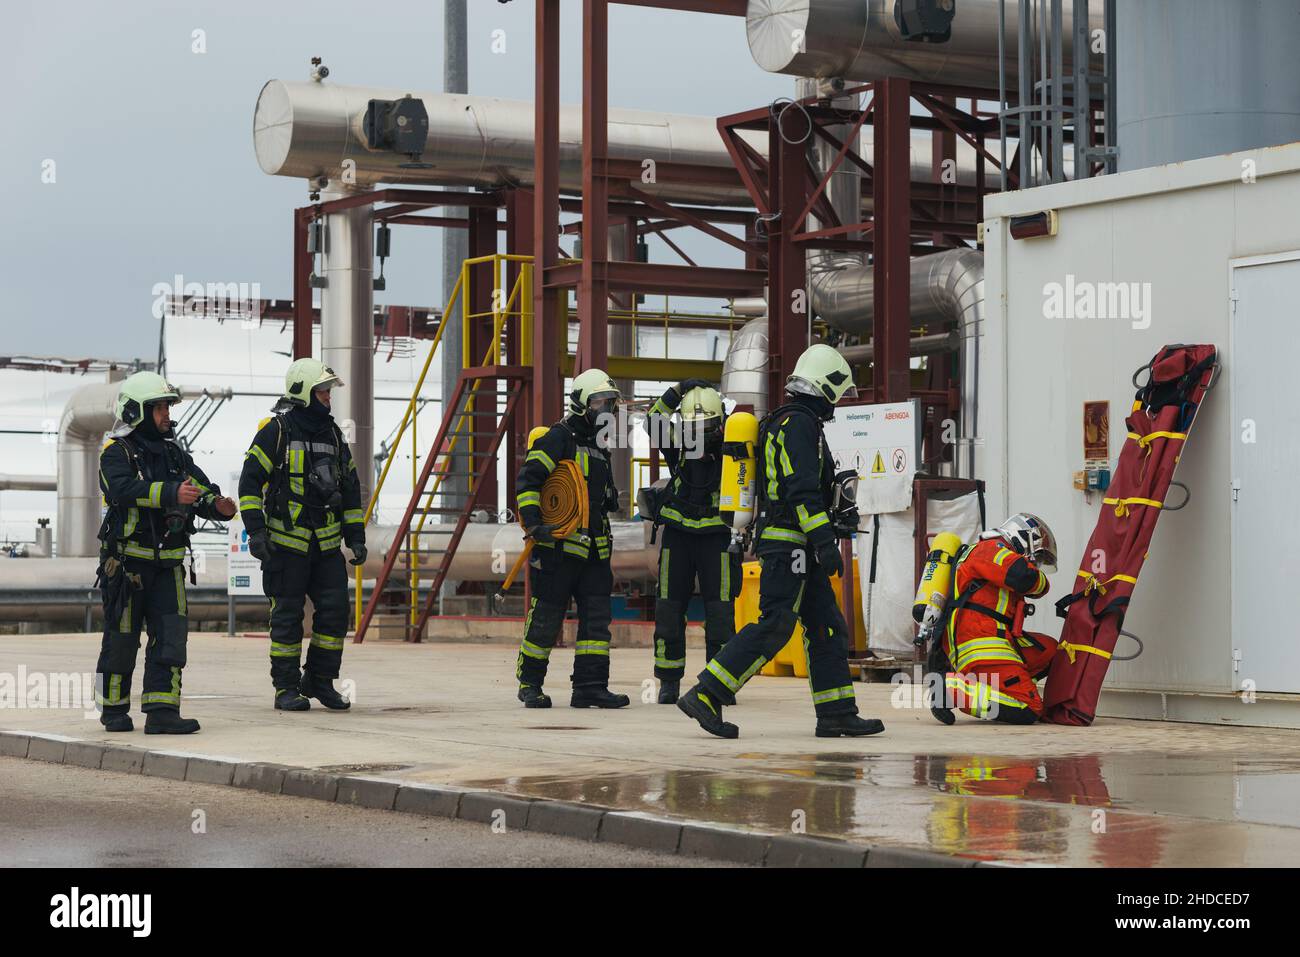 Feuerwehrmänner bereiten Rettungsausrüstung und Trage vor. Üben. Stockfoto